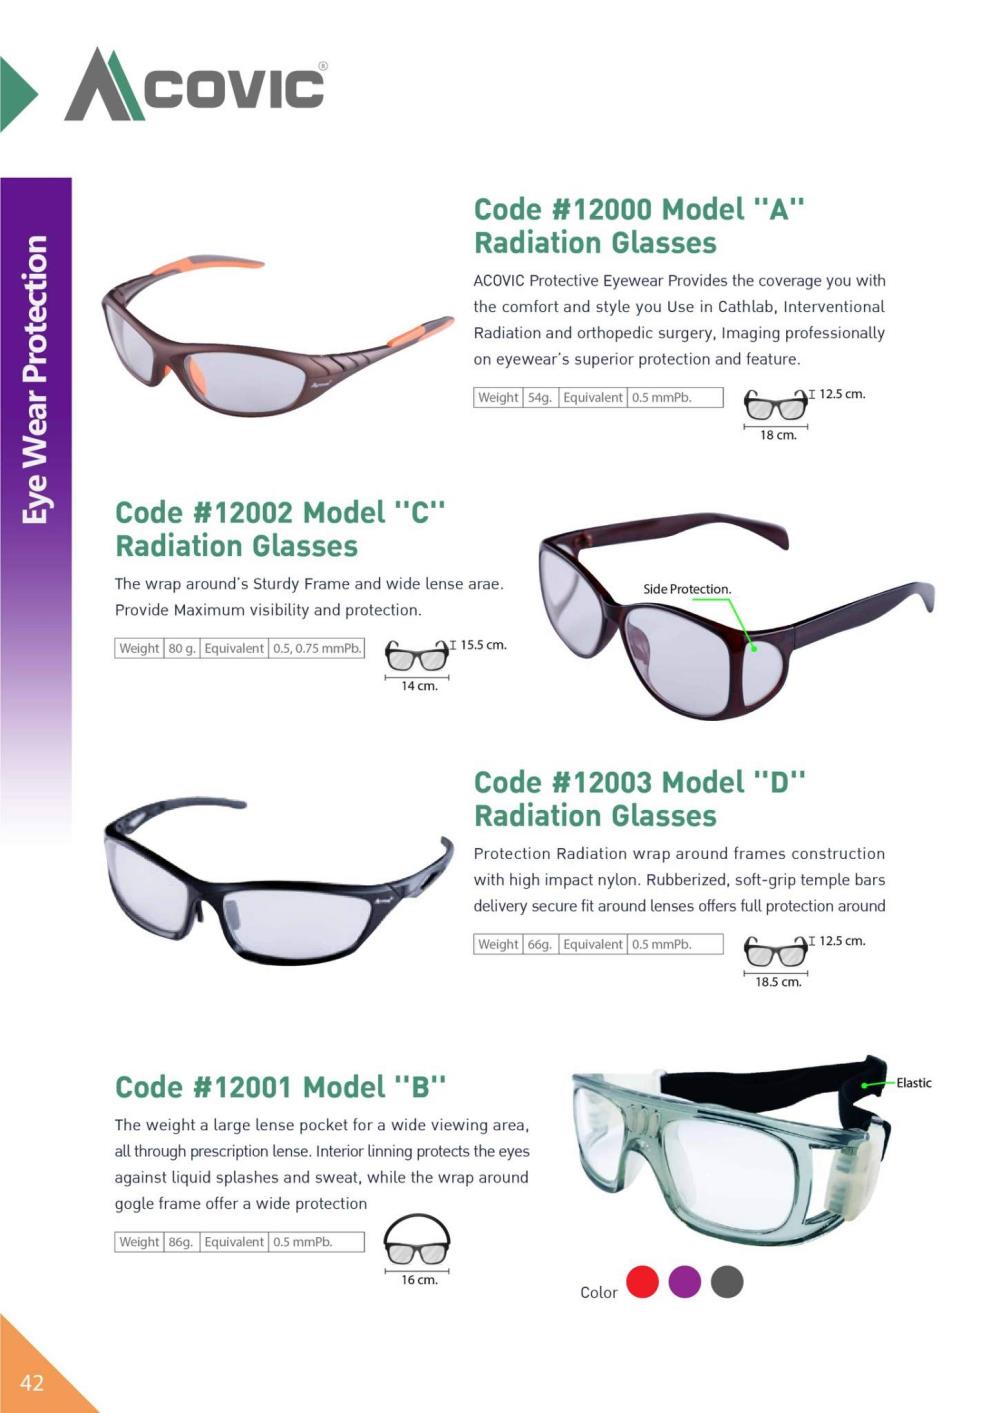 แว่นตากันรังสีเอกซเรย์ Model D ( X-RAY Protective Lead Glasses )